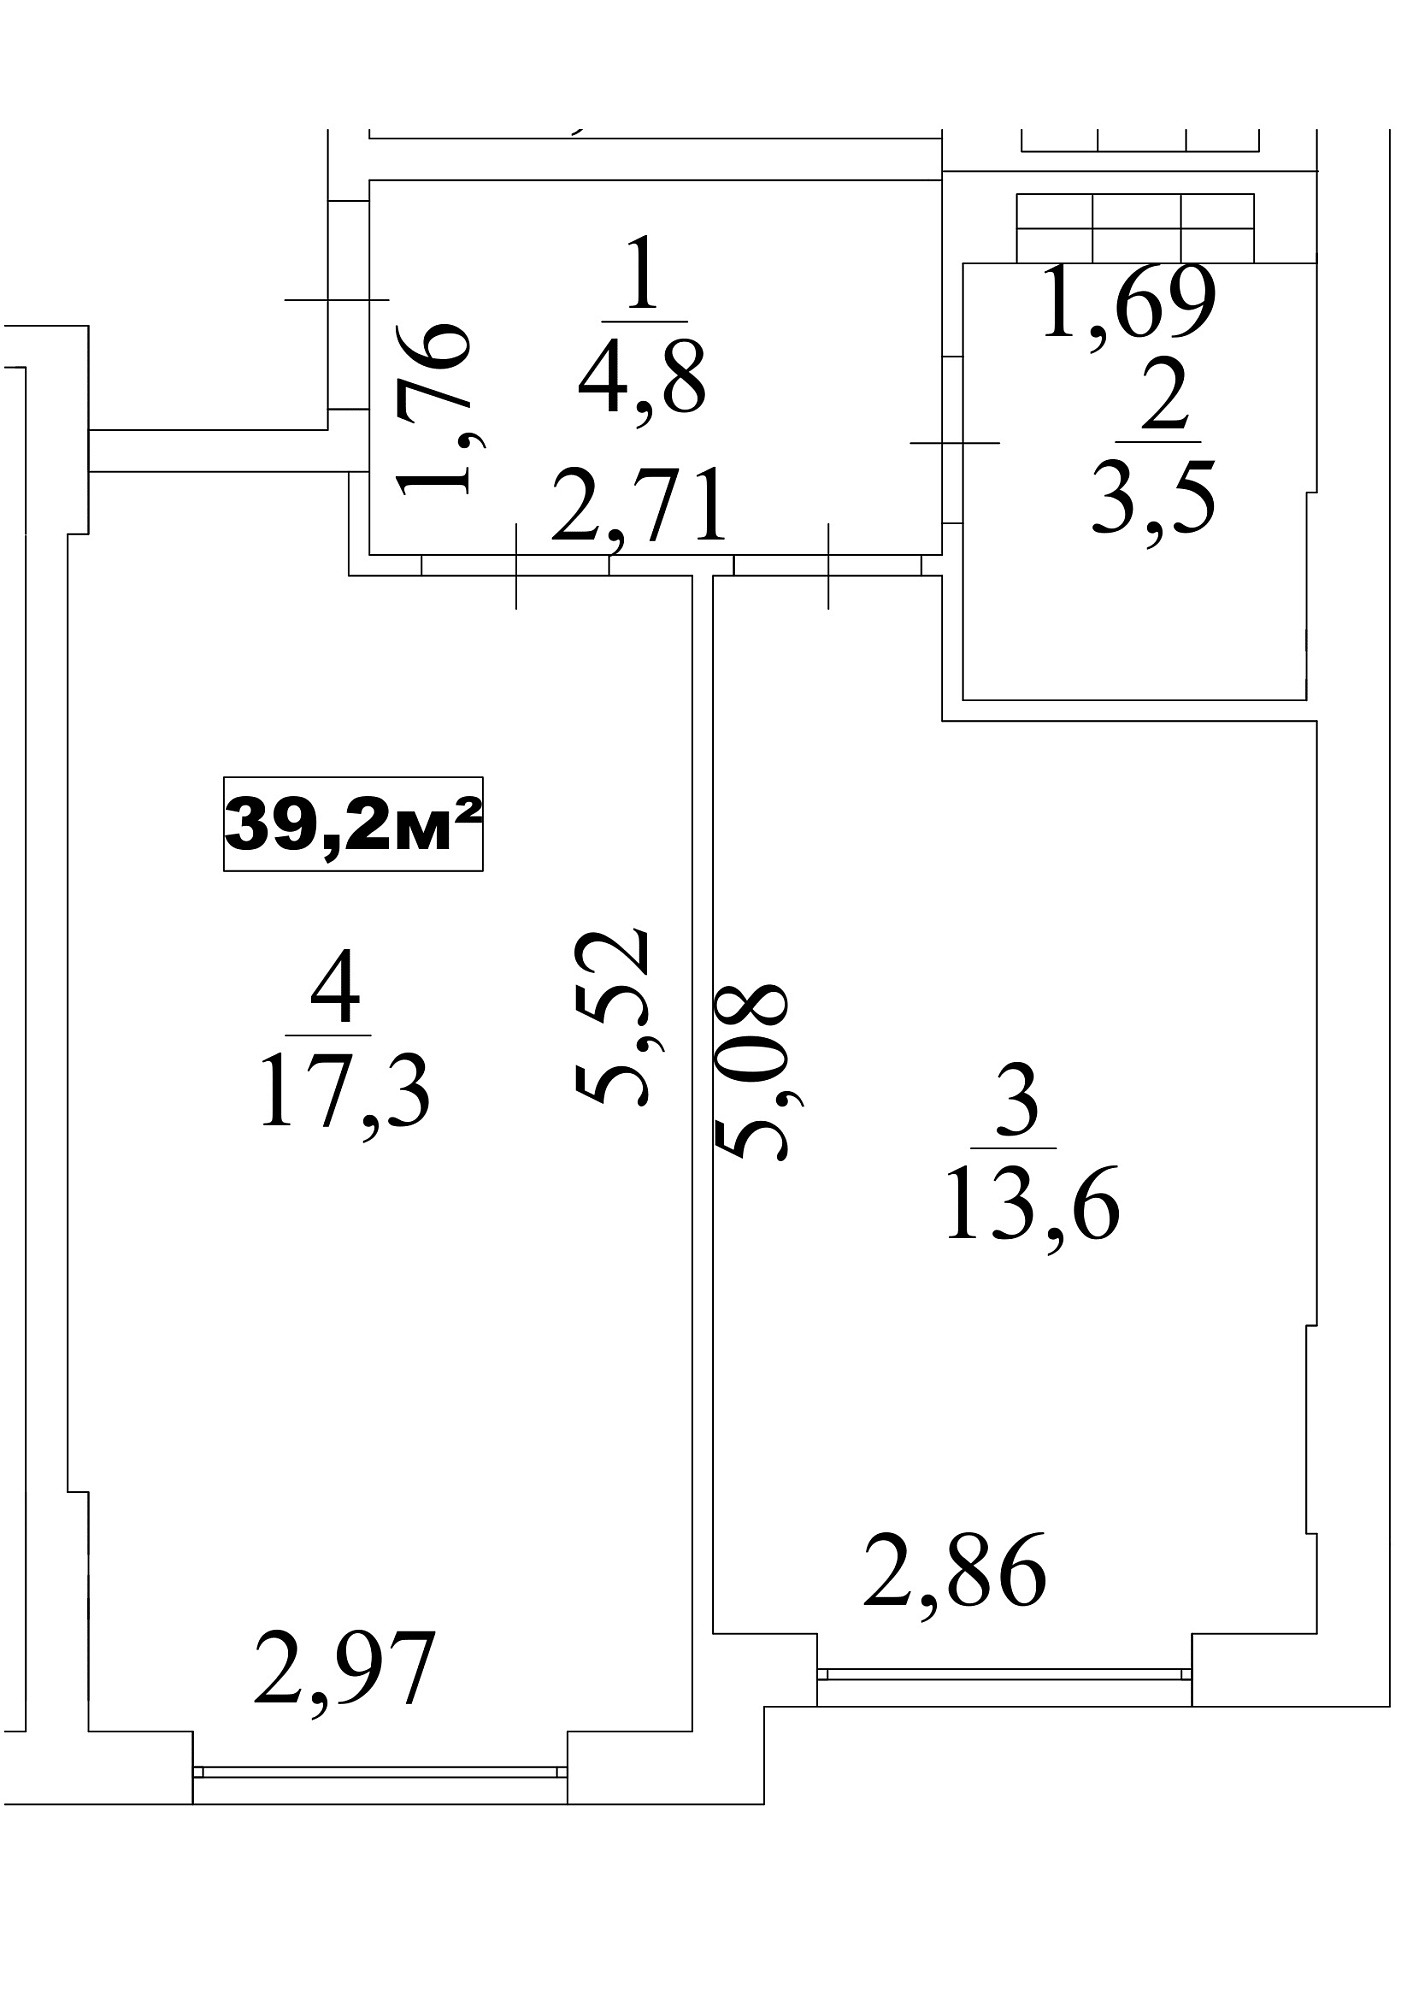 Планування 1-к квартира площею 39.2м2, AB-10-10/0088в.